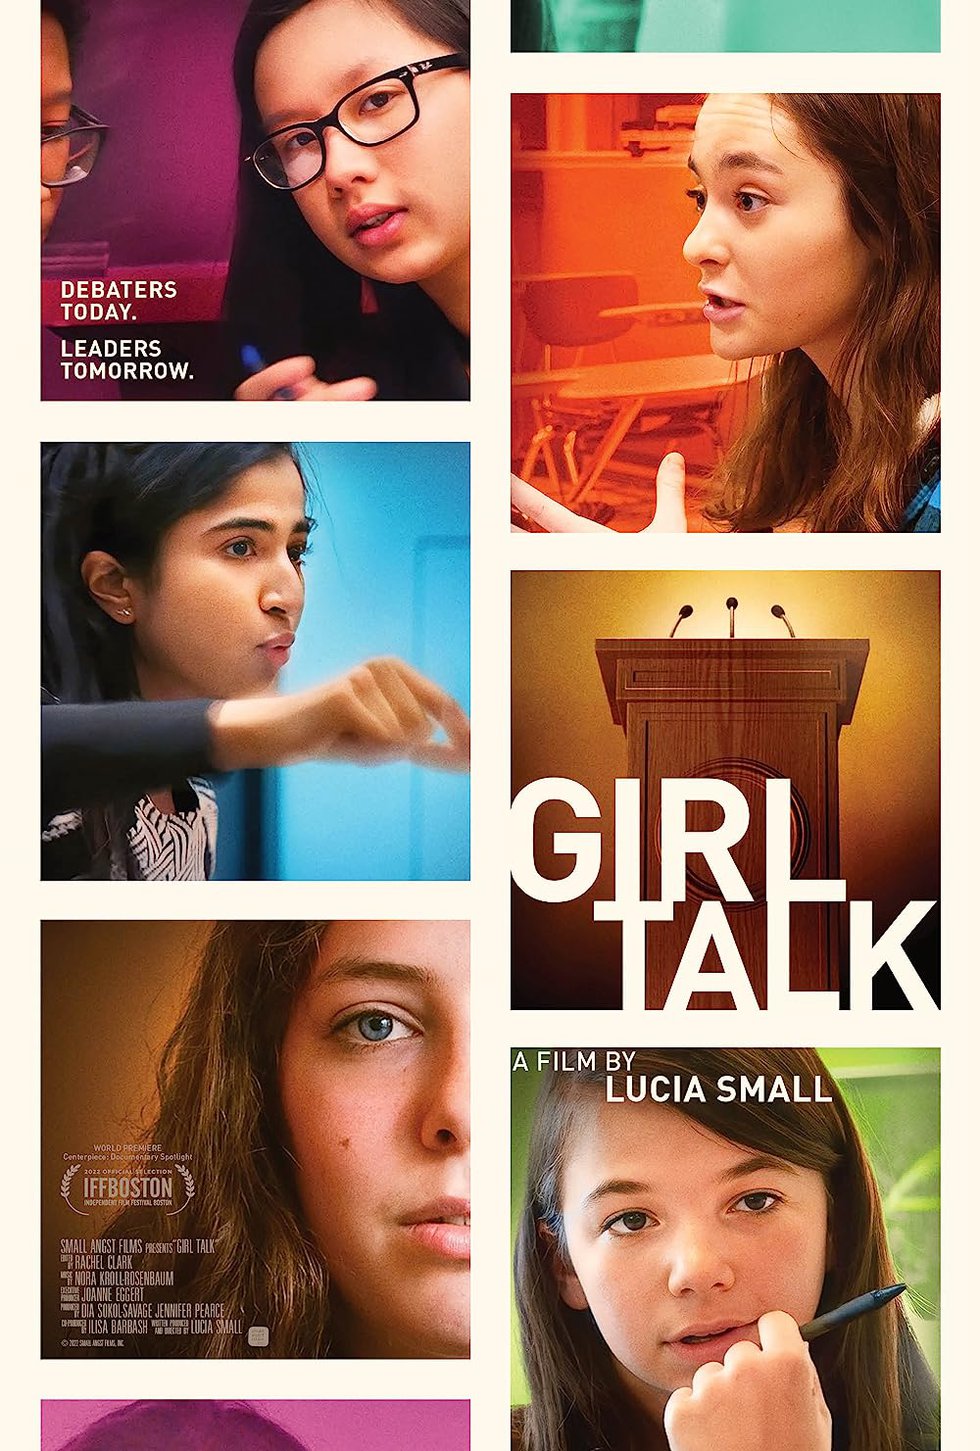 Girl Talk Women's Studies Documentary